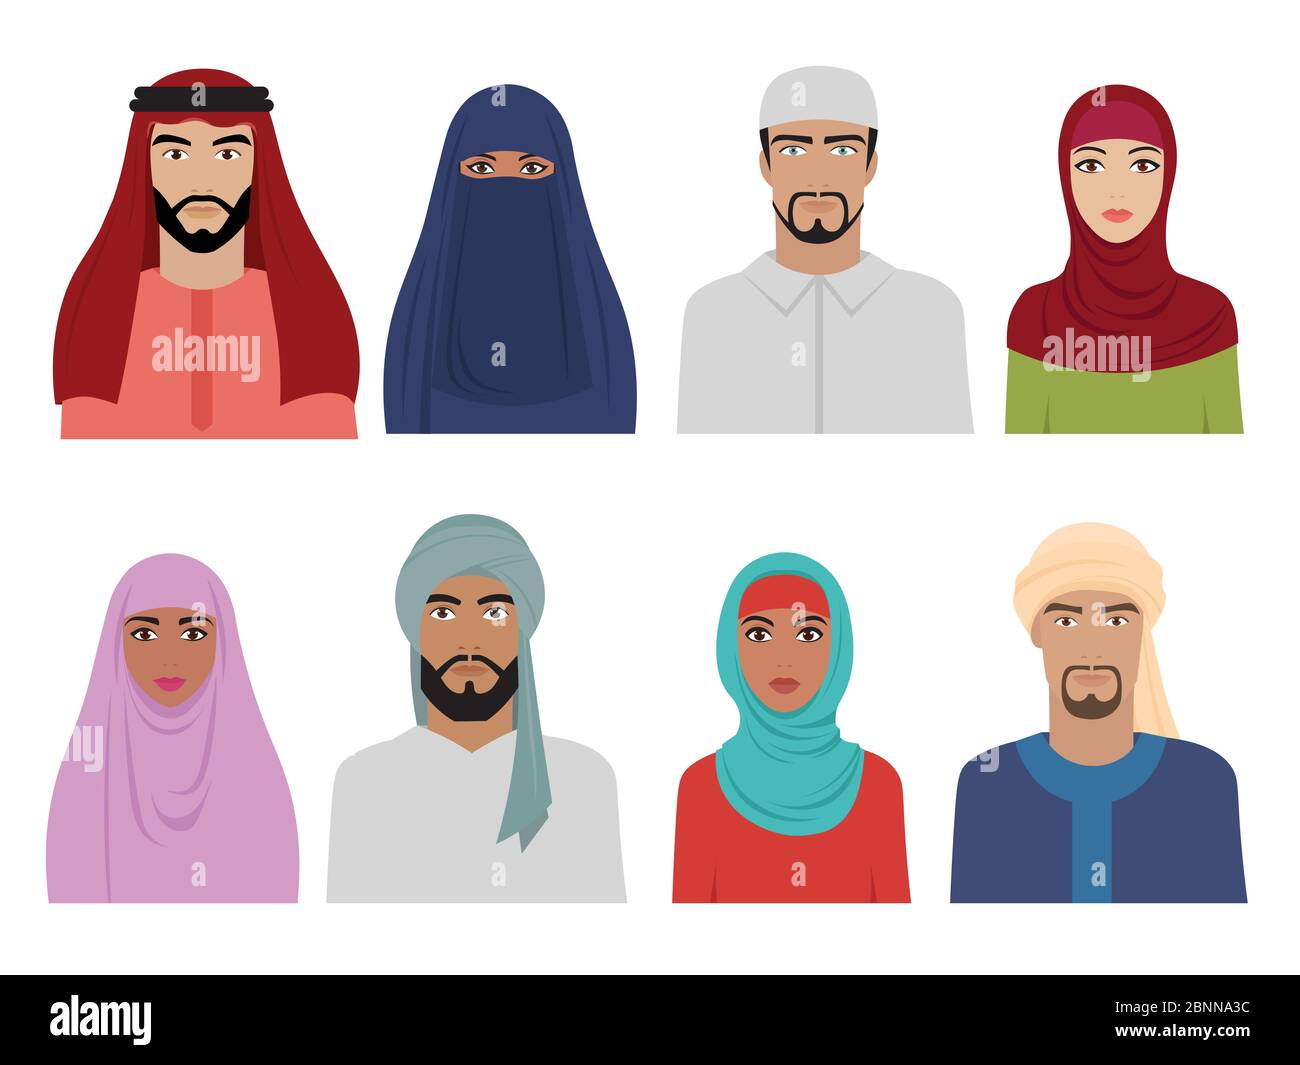 Vêtements nationaux arabes. Islamique iranien turc et arabe mode pour le foulard hijab et les robes de tête pour hommes et femmes illustrations vectorielles Illustration de Vecteur